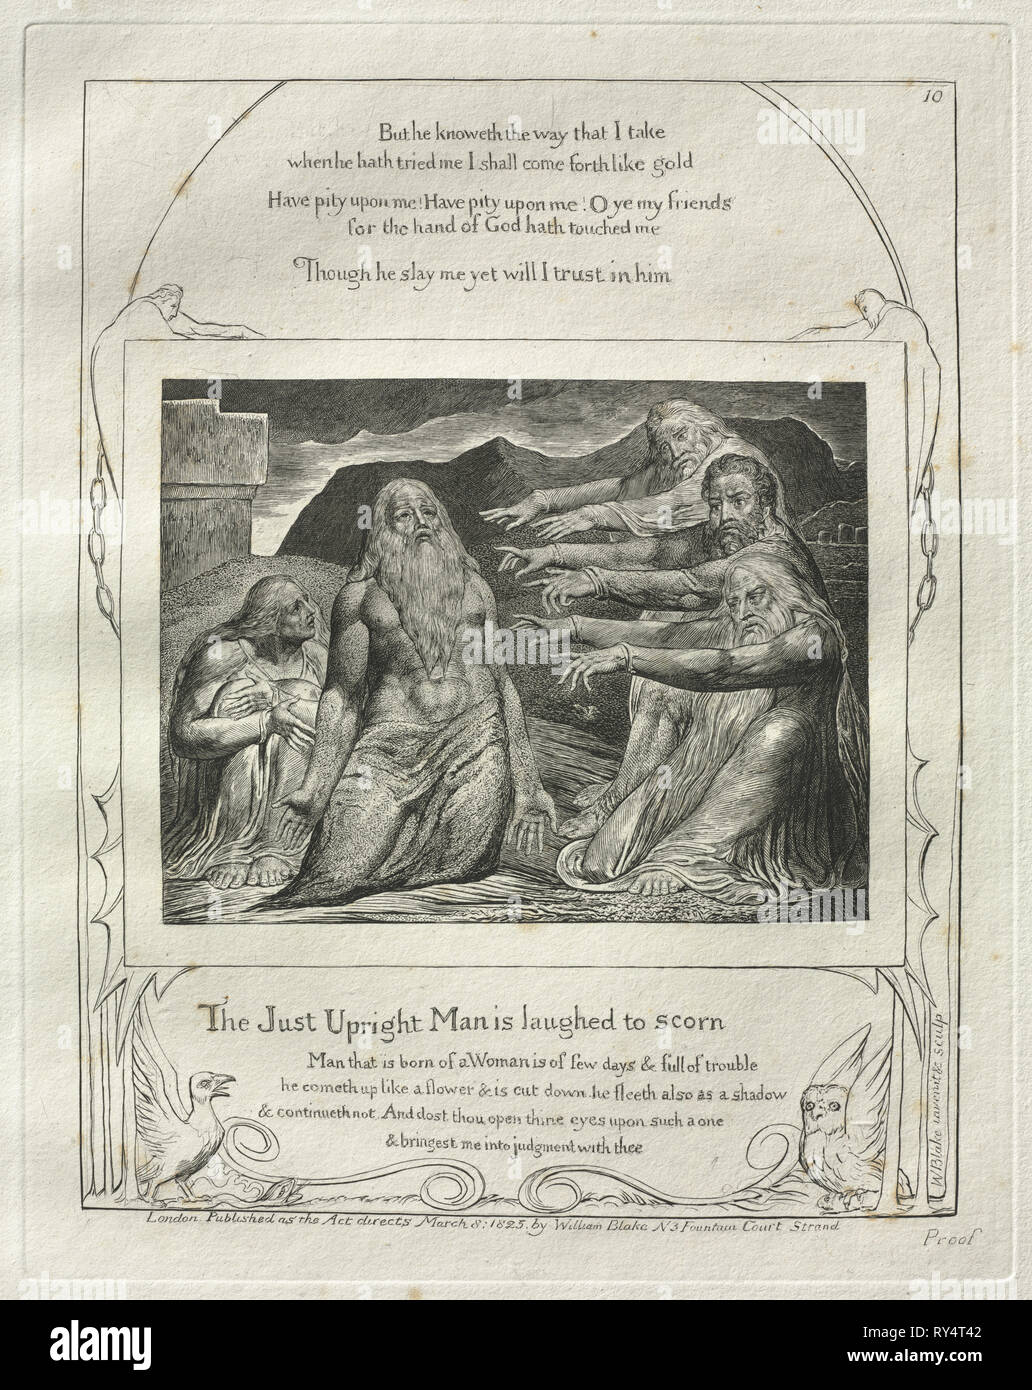 El libro de Job: Pl. 10, sólo el hombre es vertical se rió con desprecio, de 1825. William Blake (británico, 1757-1827). Grabado Foto de stock